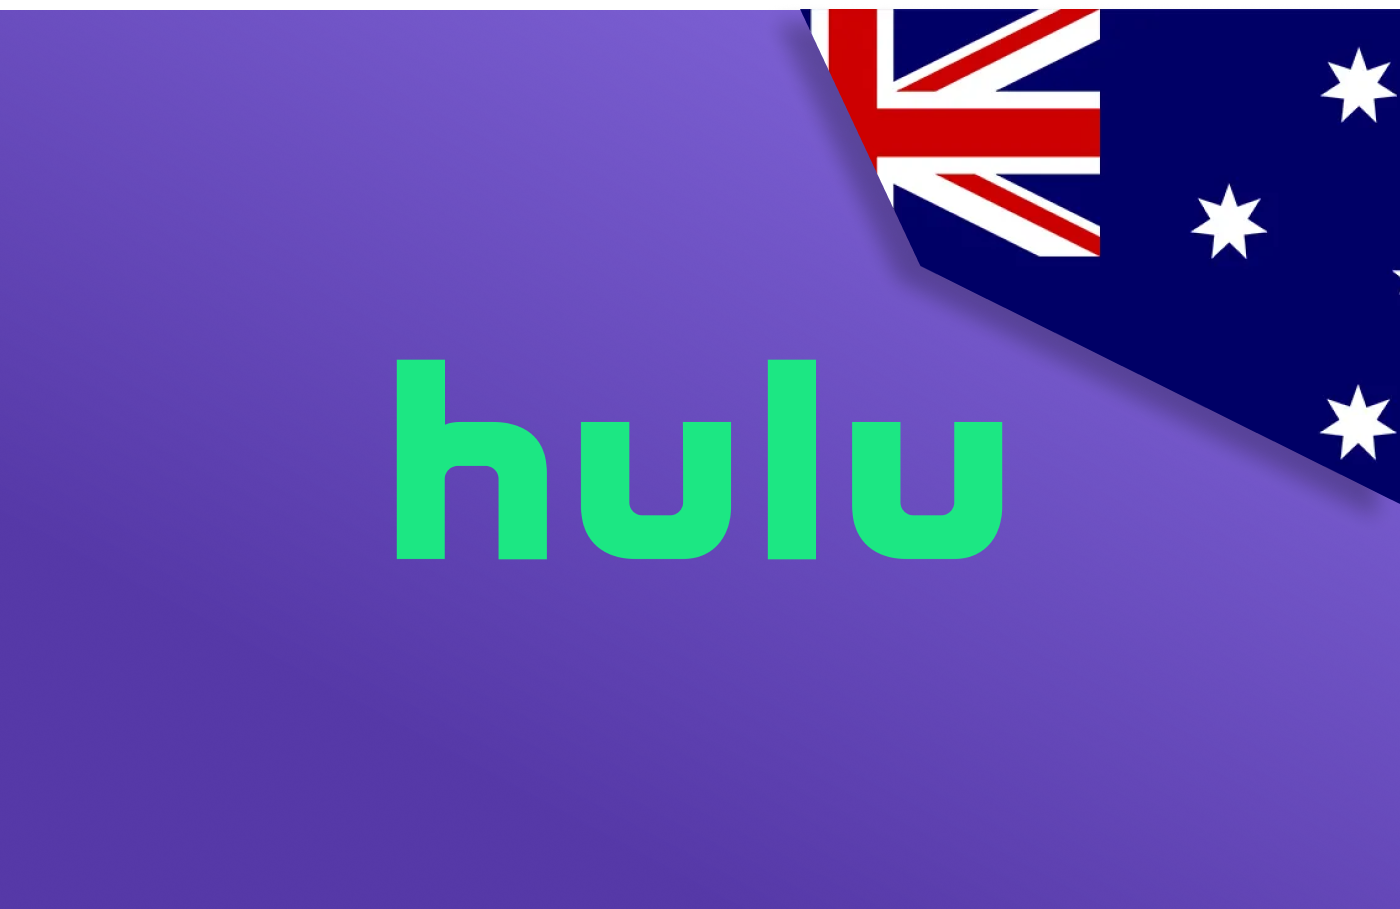 Watch Hulu in Australia